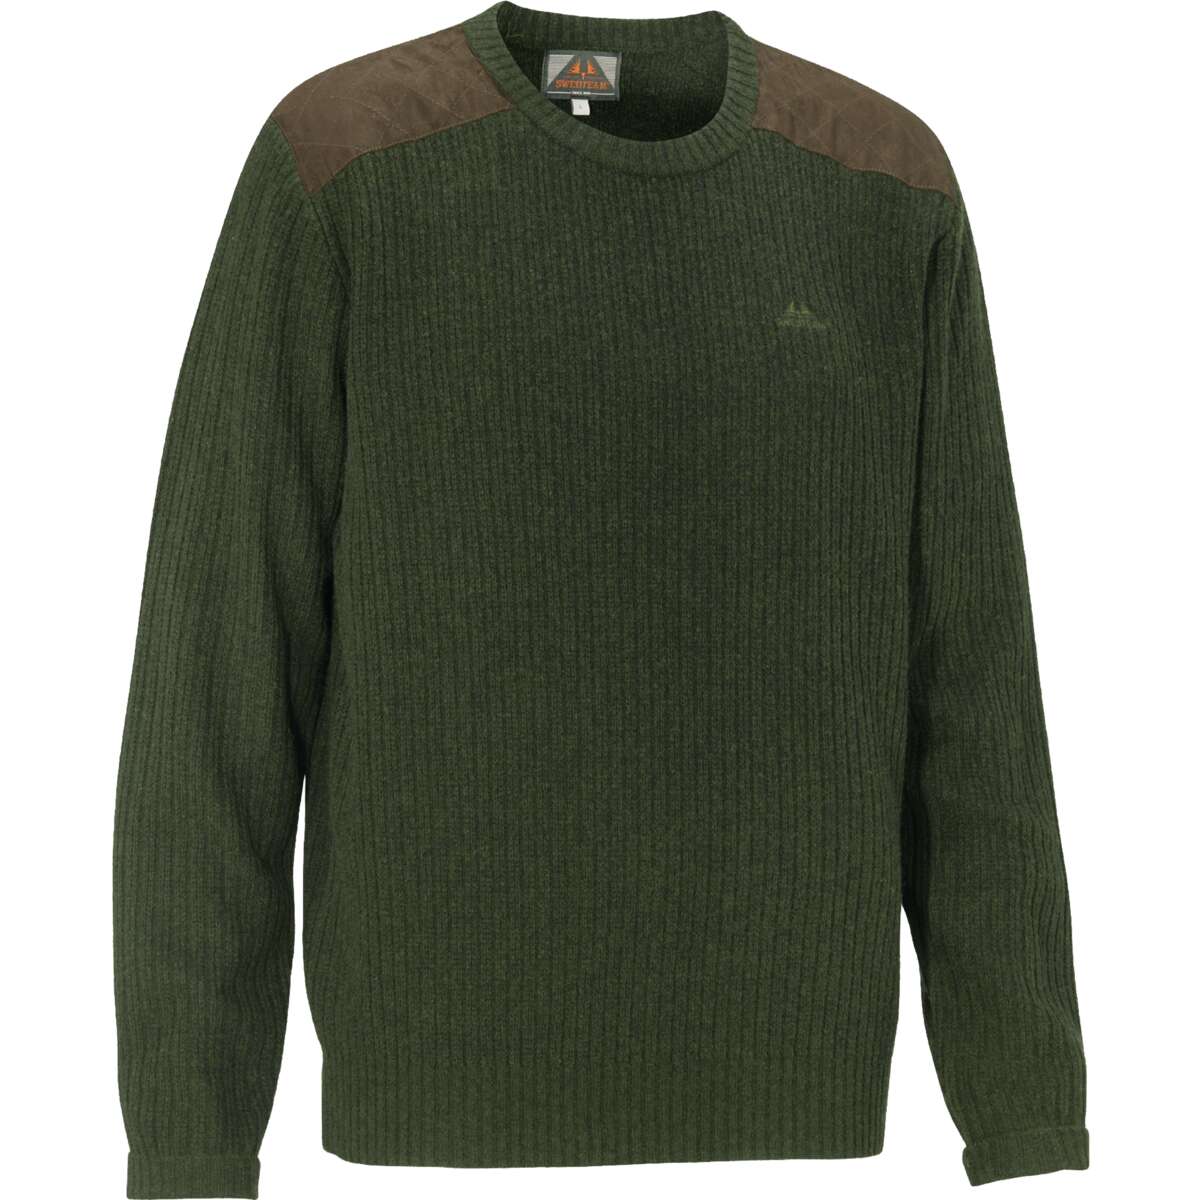 Derek Sweater Loden Green - 2XL thumbnail